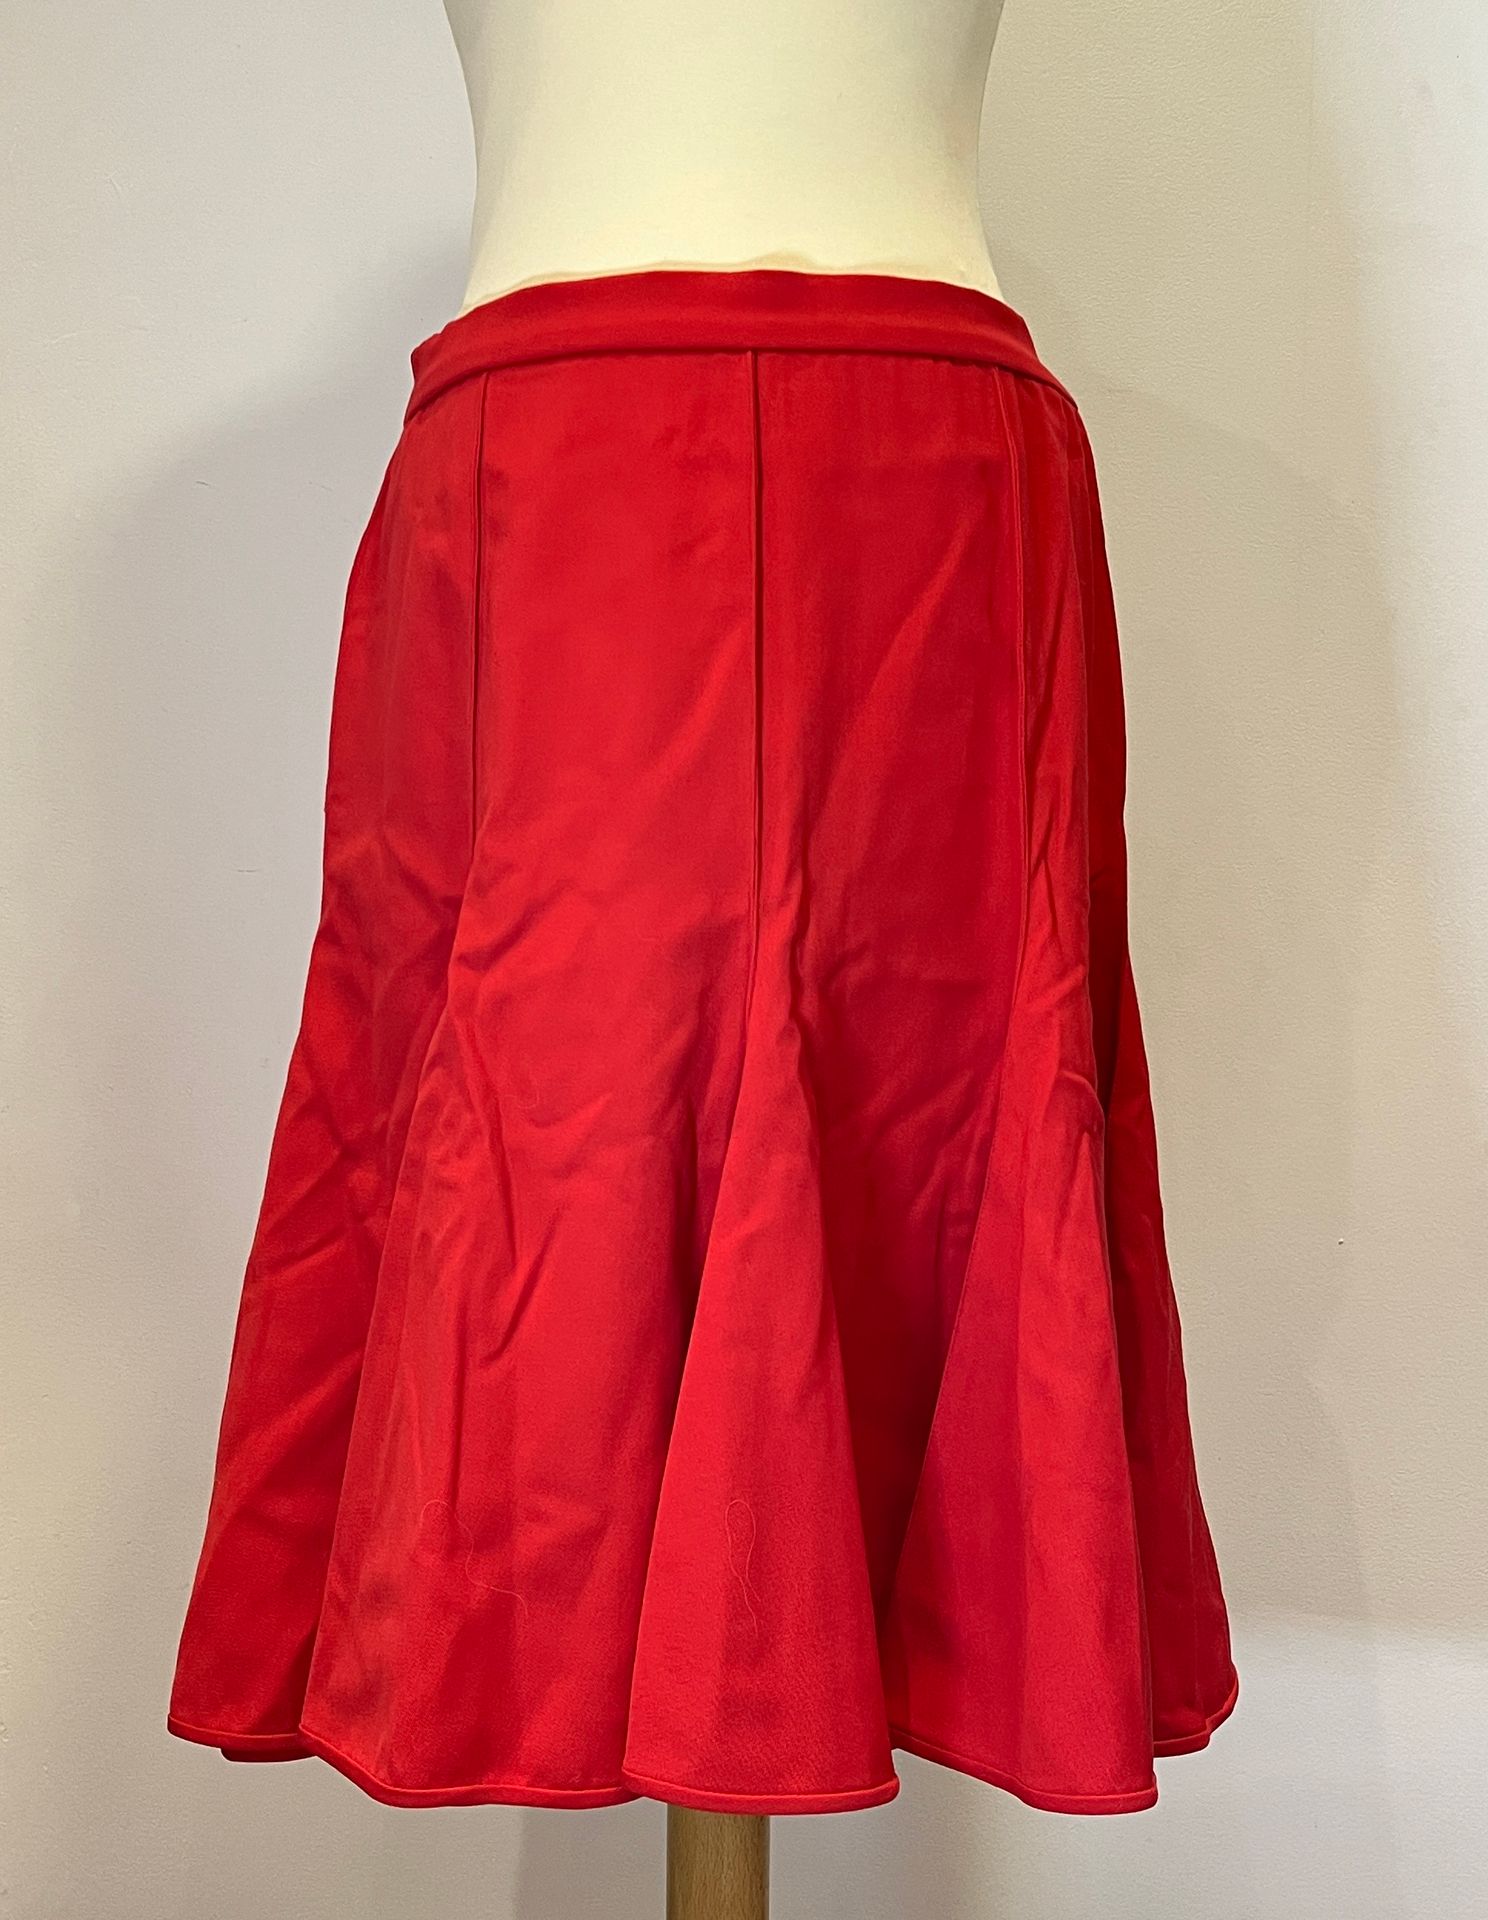 Null VALENTINO BOUTIQUE - zwei Röcke mit Schößchen, einer rot Größe 44 und einer&hellip;